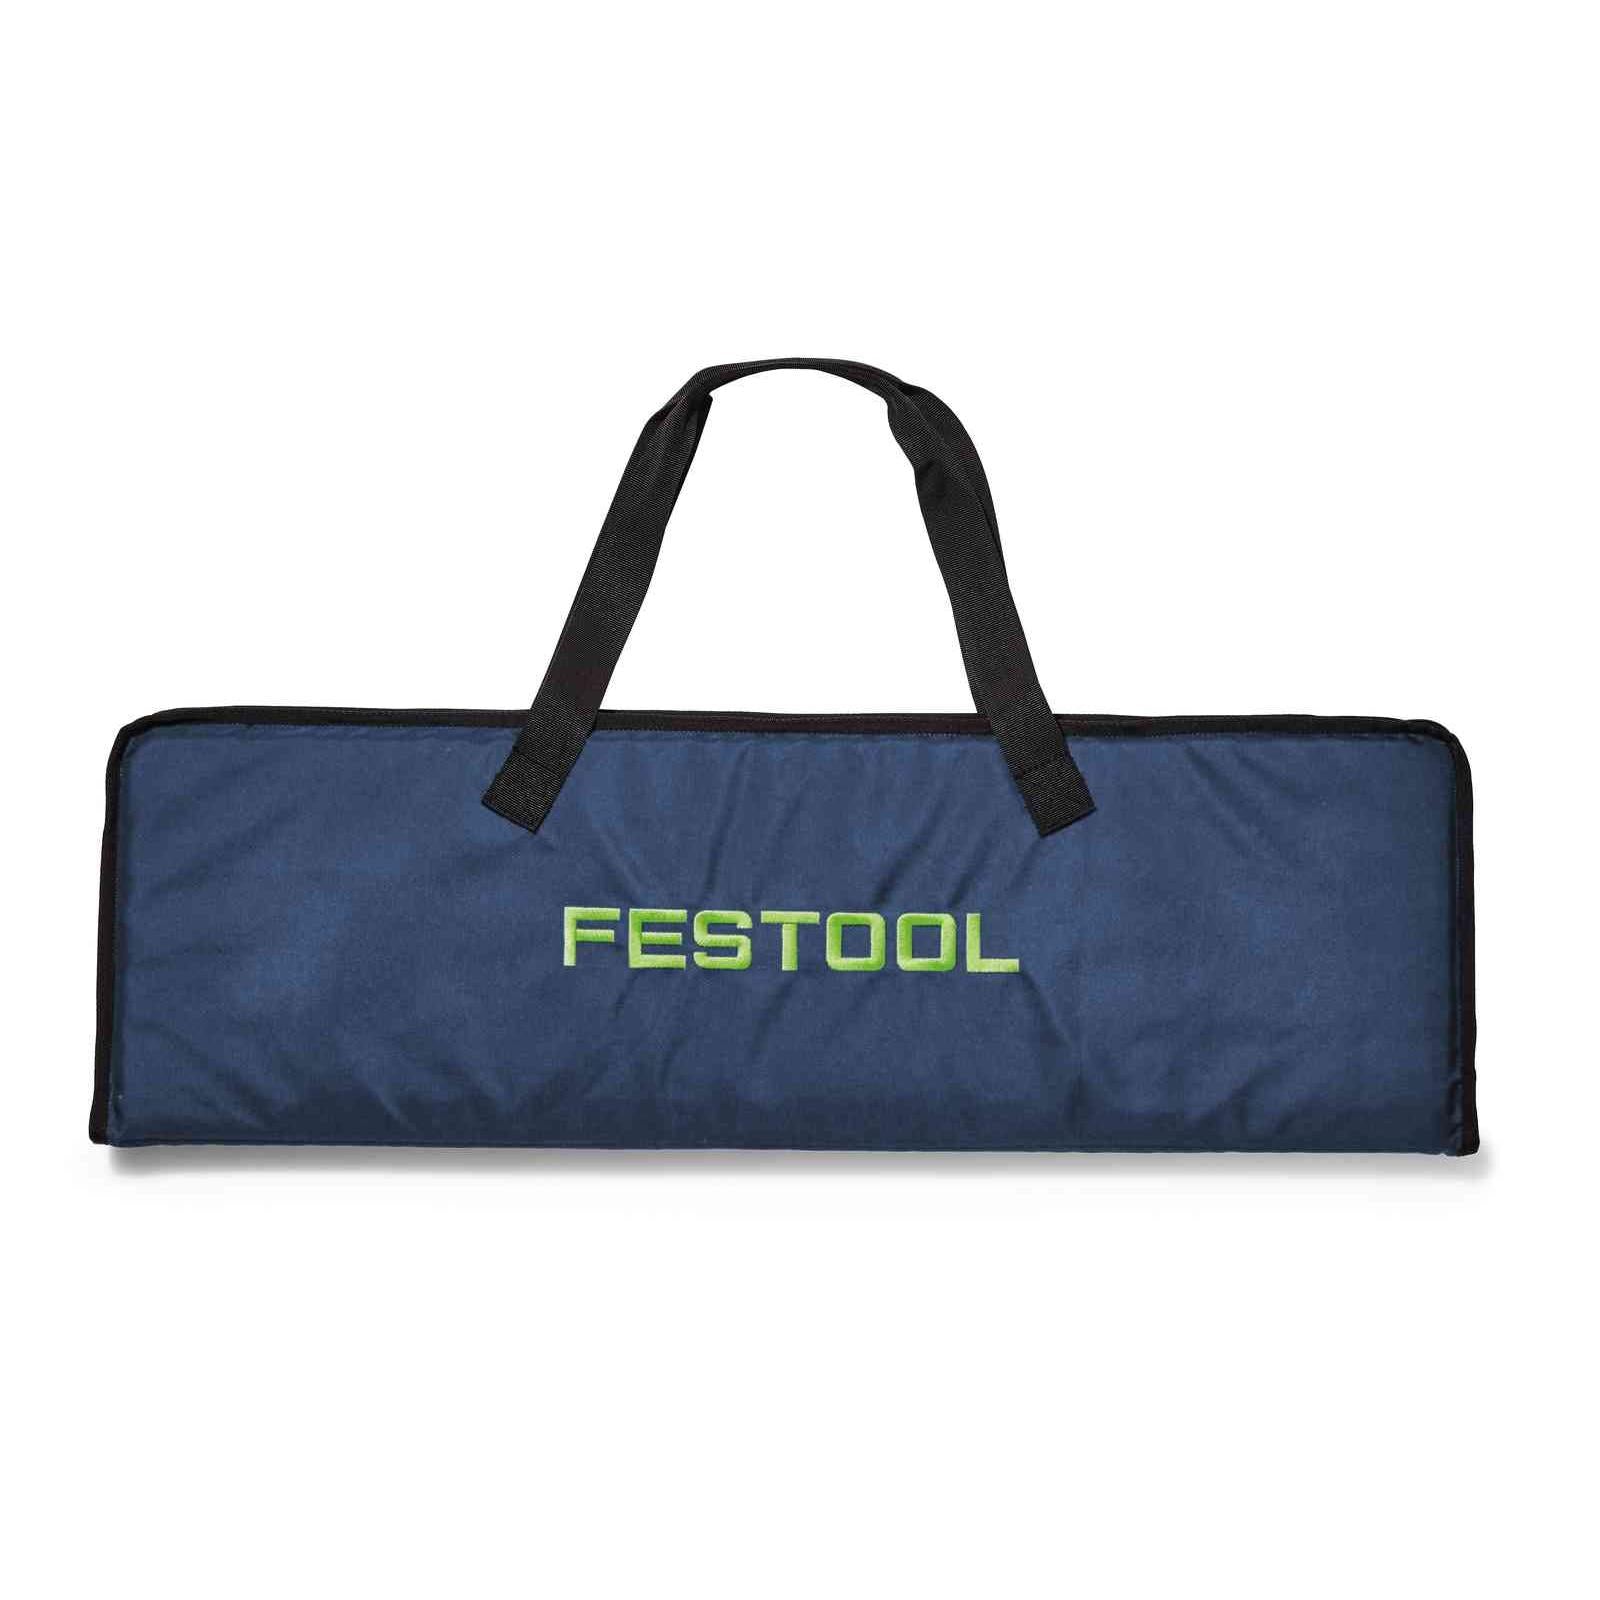 Festool Bag FSK670-BAG 200161 Power Tool Services